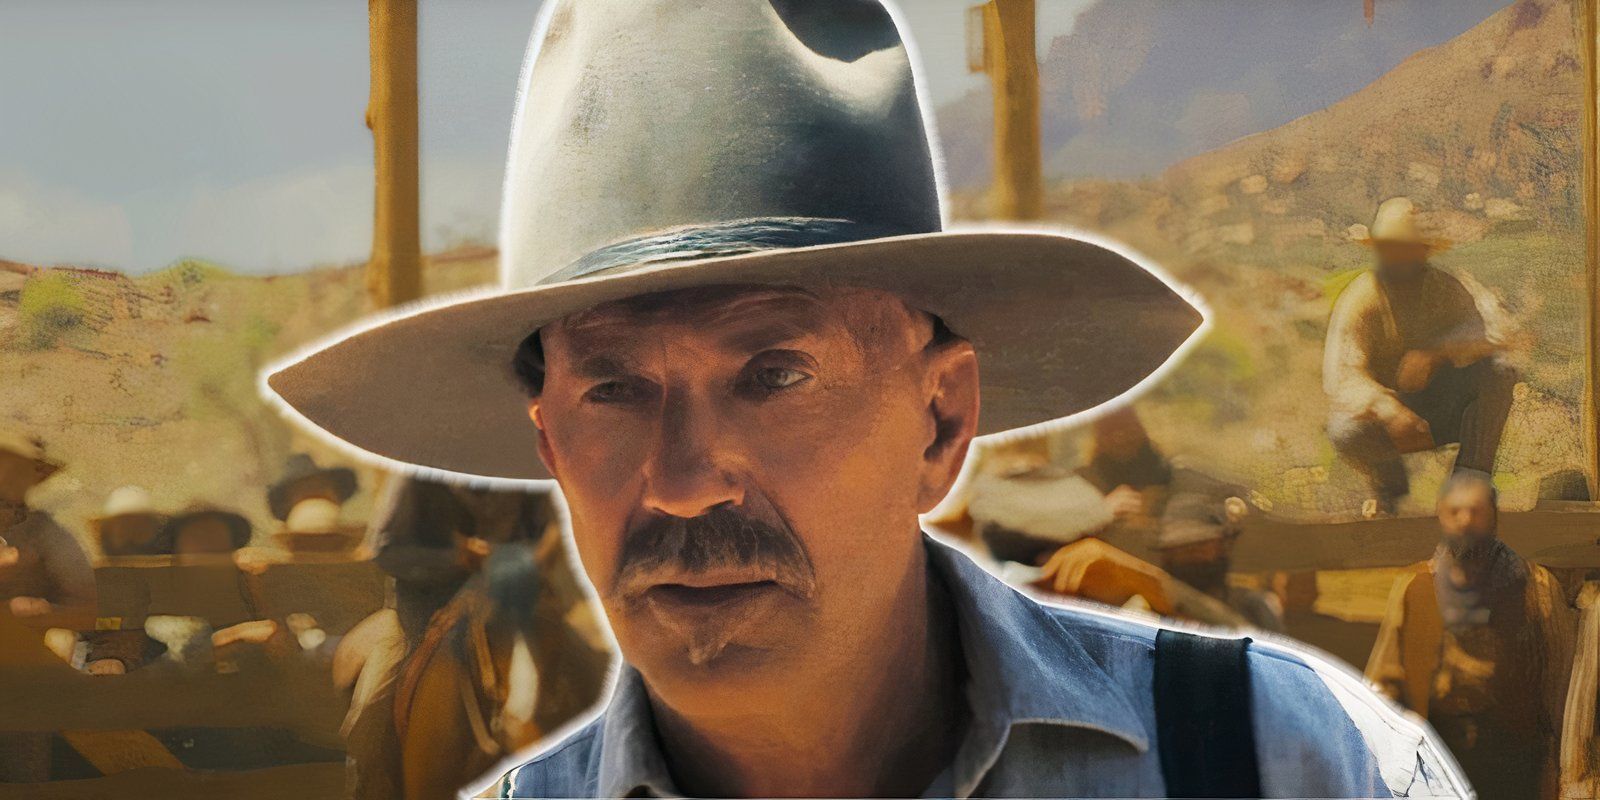 Kevin Costner confirma cuánto de su propio dinero gastó en la nueva película occidental Horizon